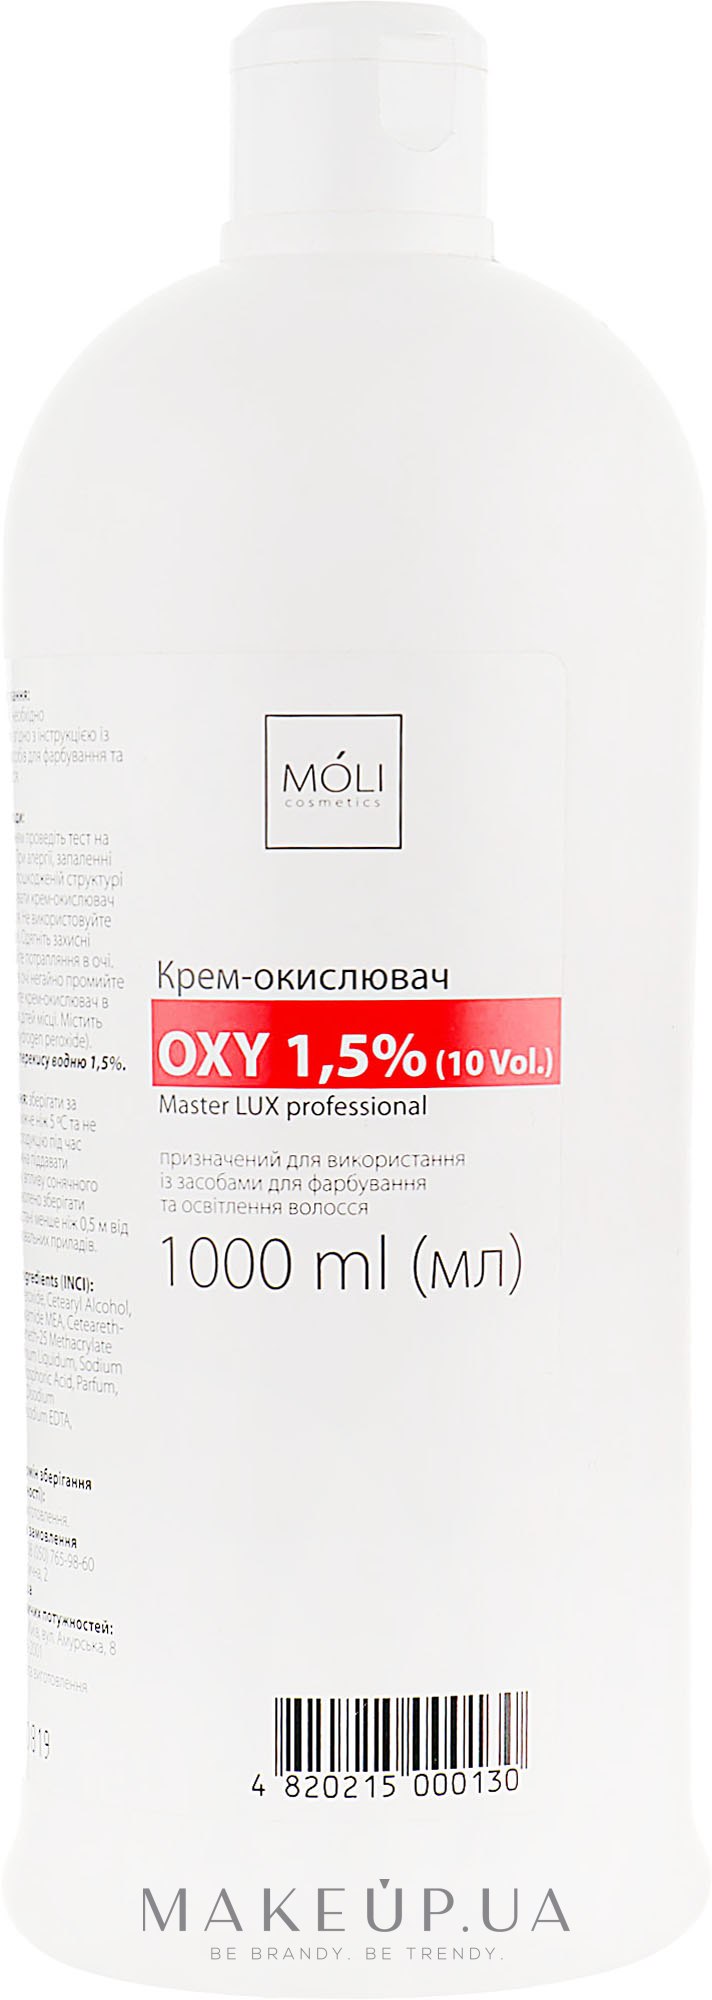 Окислительная эмульсия 1.5% - Moli Cosmetics Oxy 1.5% (10 Vol.) — фото 1000ml